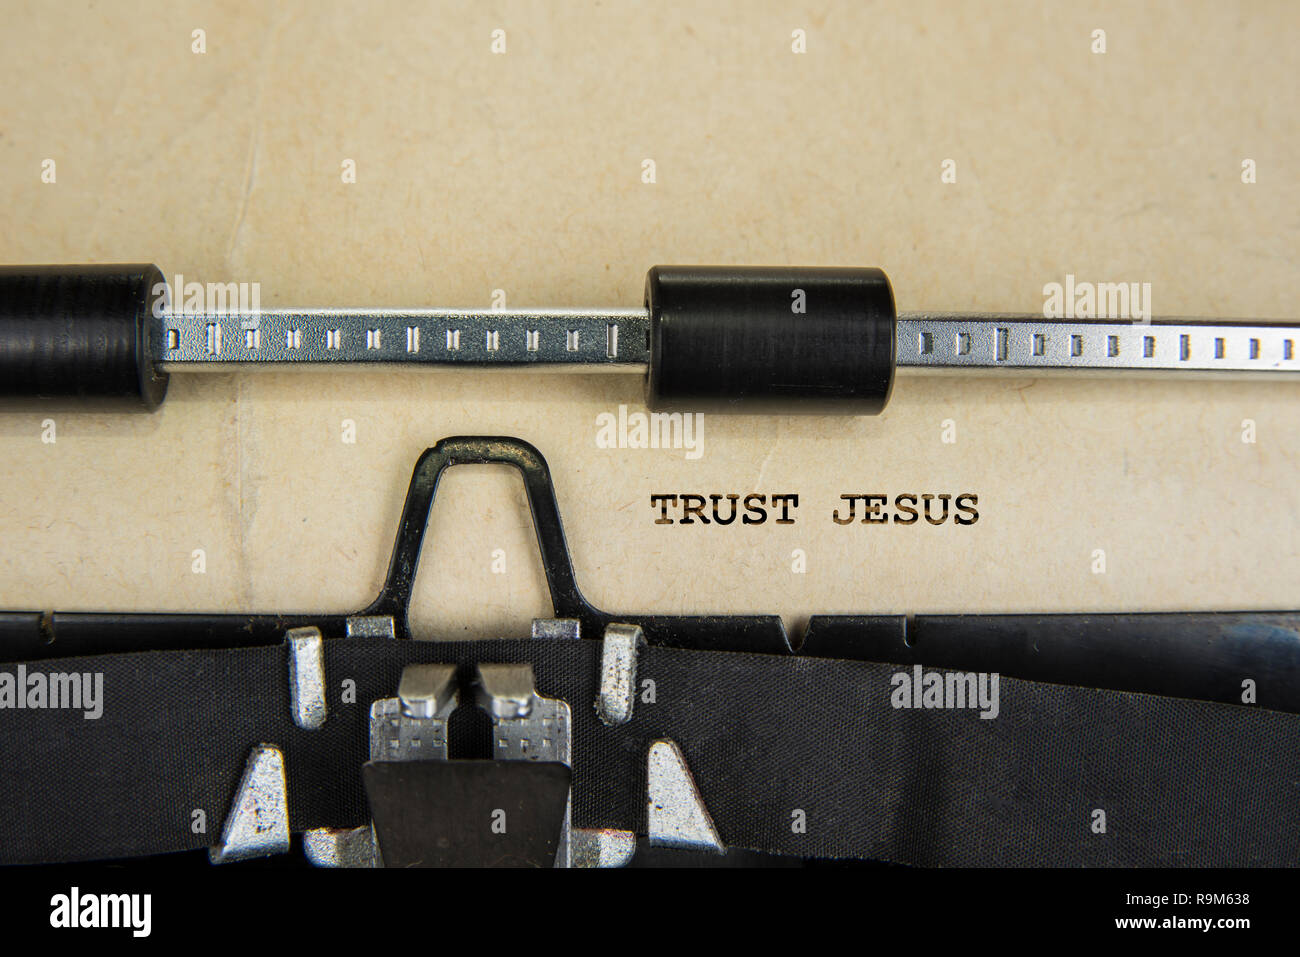 Signe spirituel confiance Jésus écrit sur une vieille machine à écrire Banque D'Images